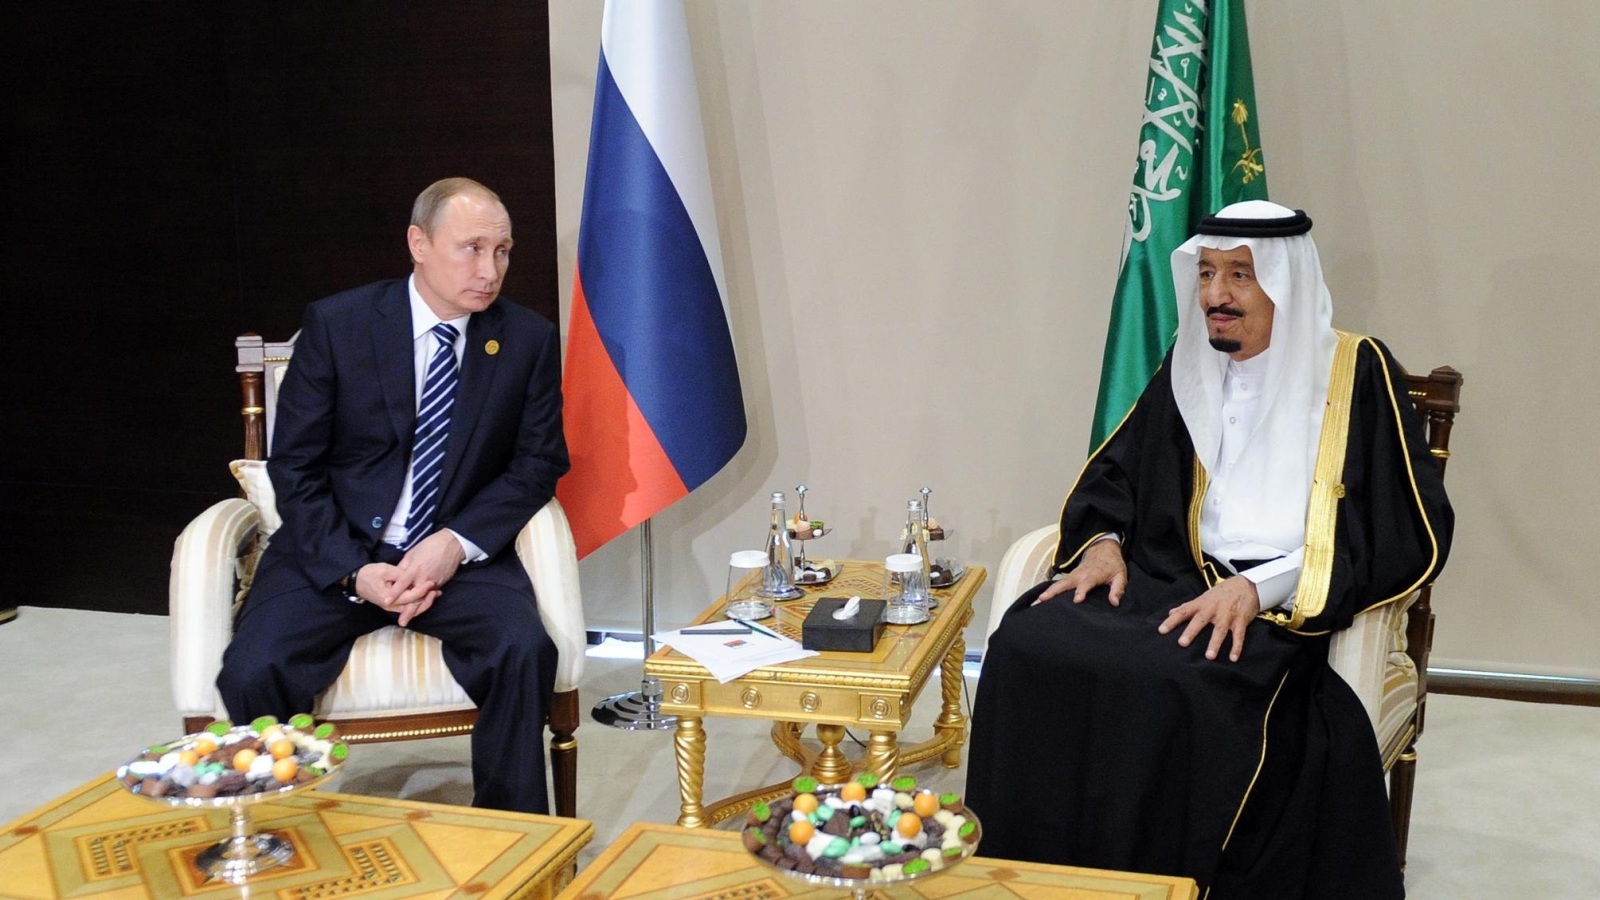 ‪الملك سلمان التقى الرئيس بوتين في قمة العشرين بتركيا أواخر 2015‬ الملك سلمان التقى الرئيس بوتين في قمة العشرين بتركيا أواخر 2015 (الأوروبية)